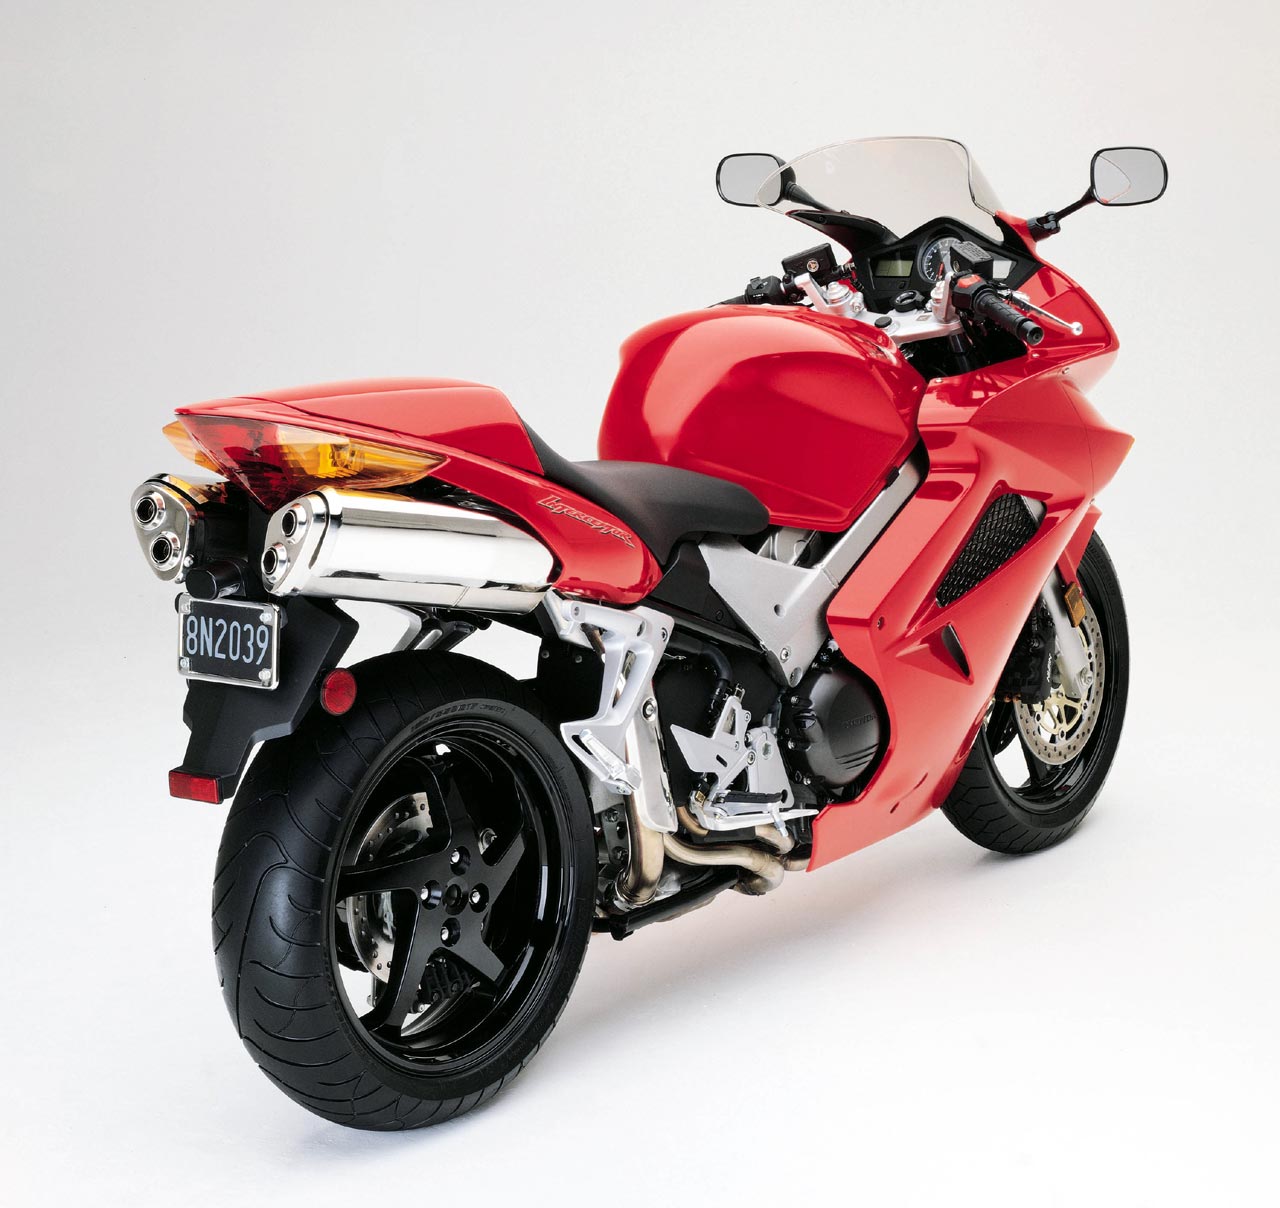 Amado Detector Torbellino Moto del día: Honda VFR 800 (RC46) - espíritu RACER moto